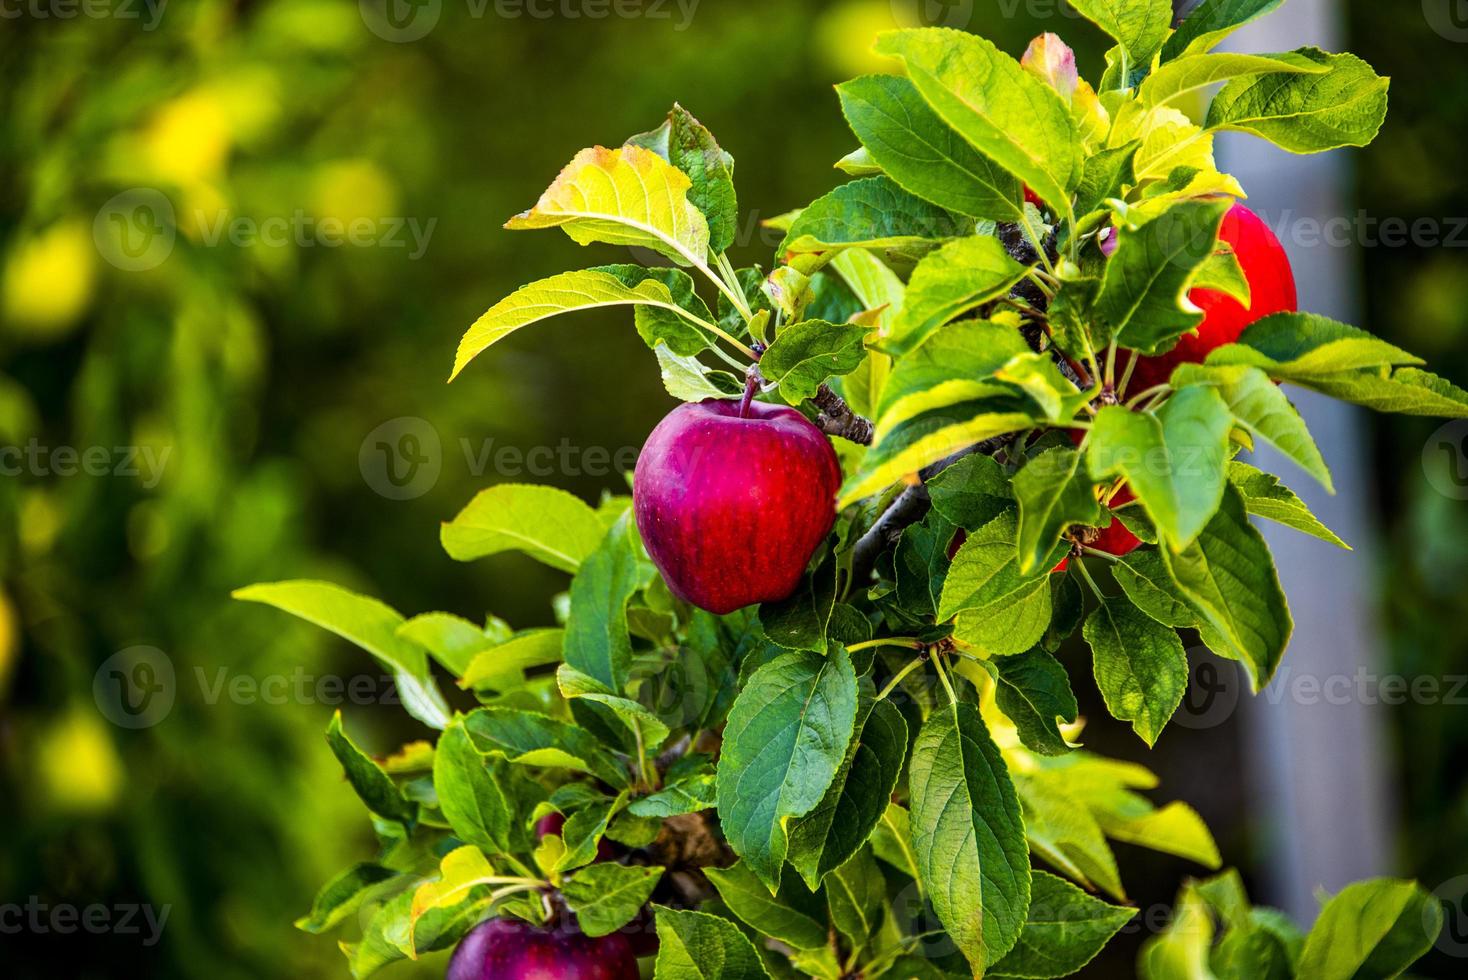 appels aan de boom foto